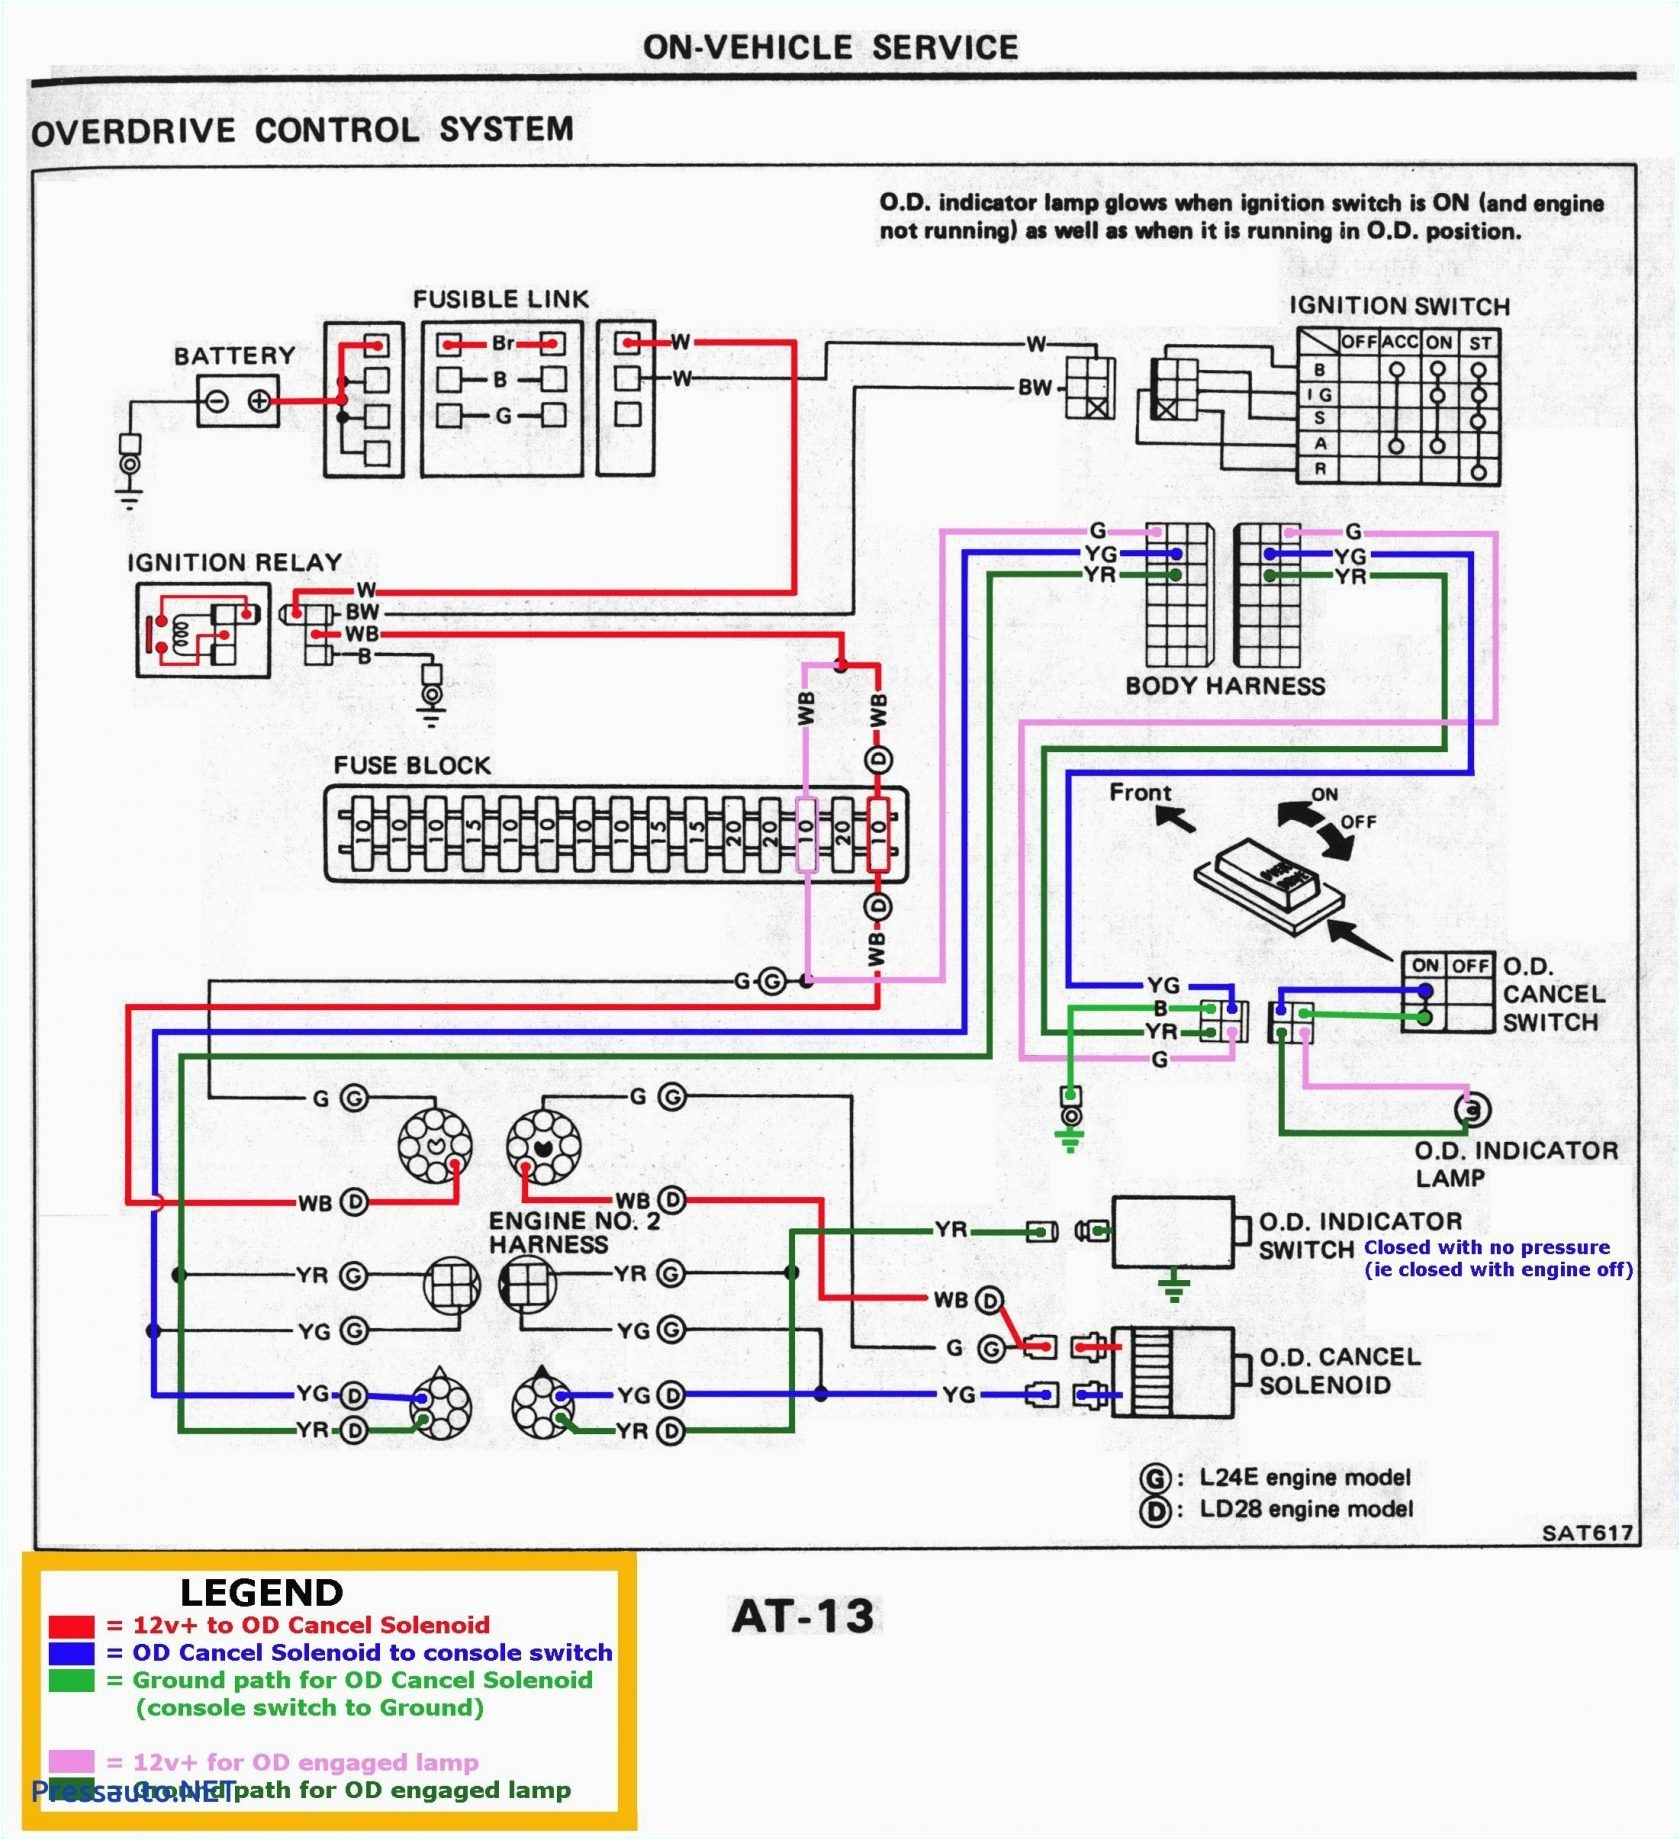 220 volt wiring diagram uw35 un imac wiring diagrams structure 220 volt wiring diagram uw35 un imac